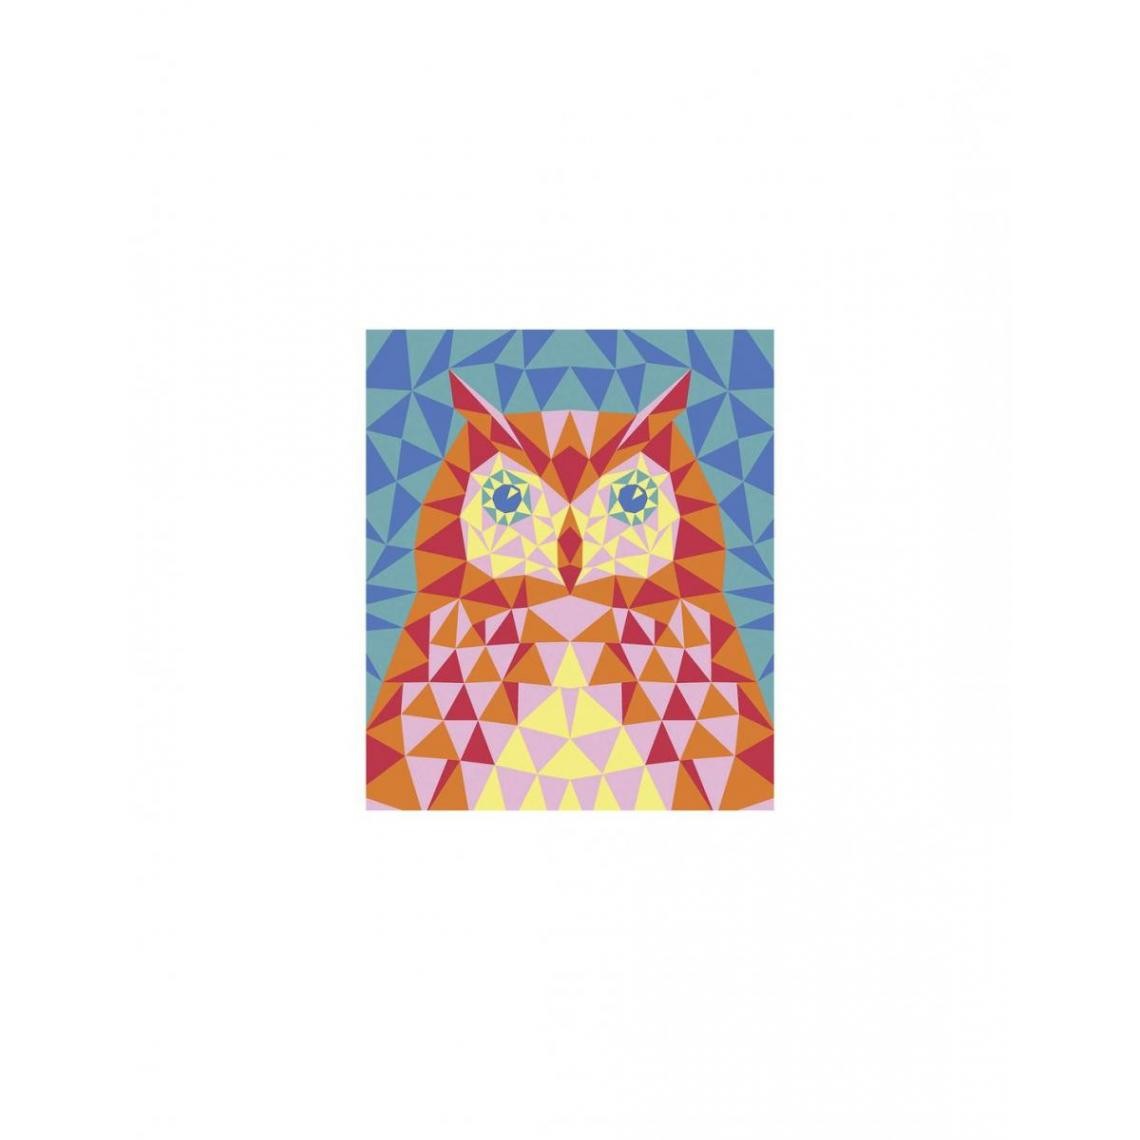 Juratoys-Janod - Loisir creatif sables colores theme oiseaux - Image autocollante